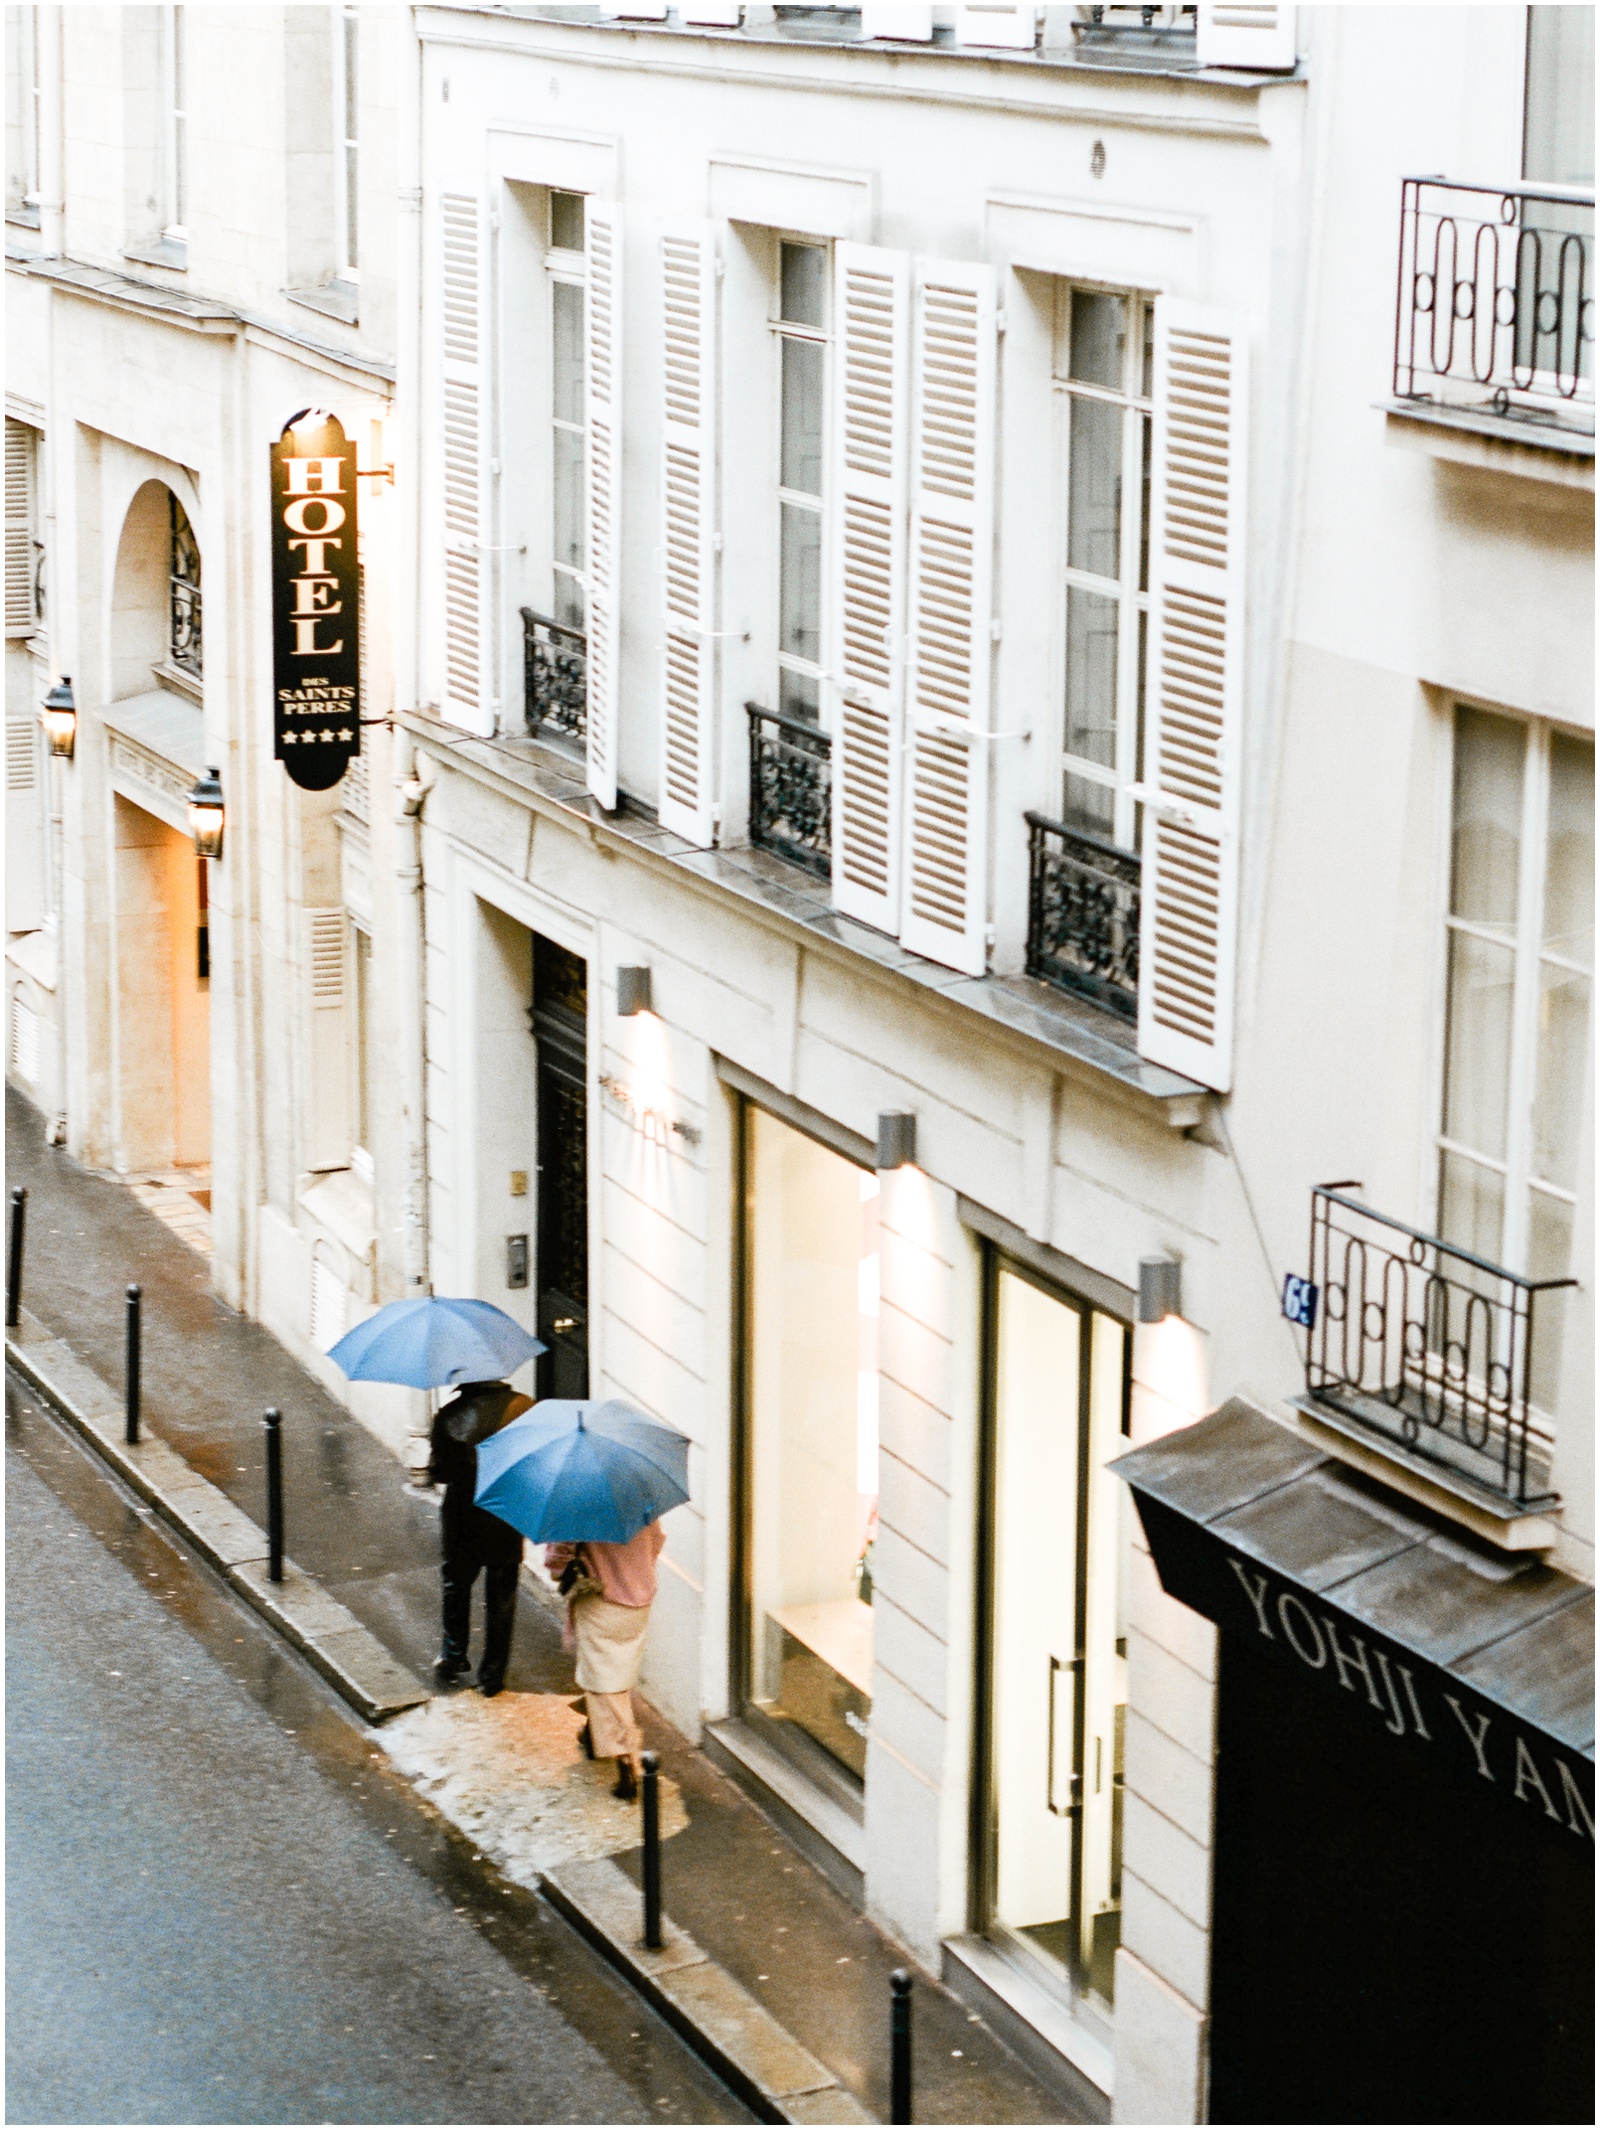 2019 Top Ten Paris travel photos: paris rainy day